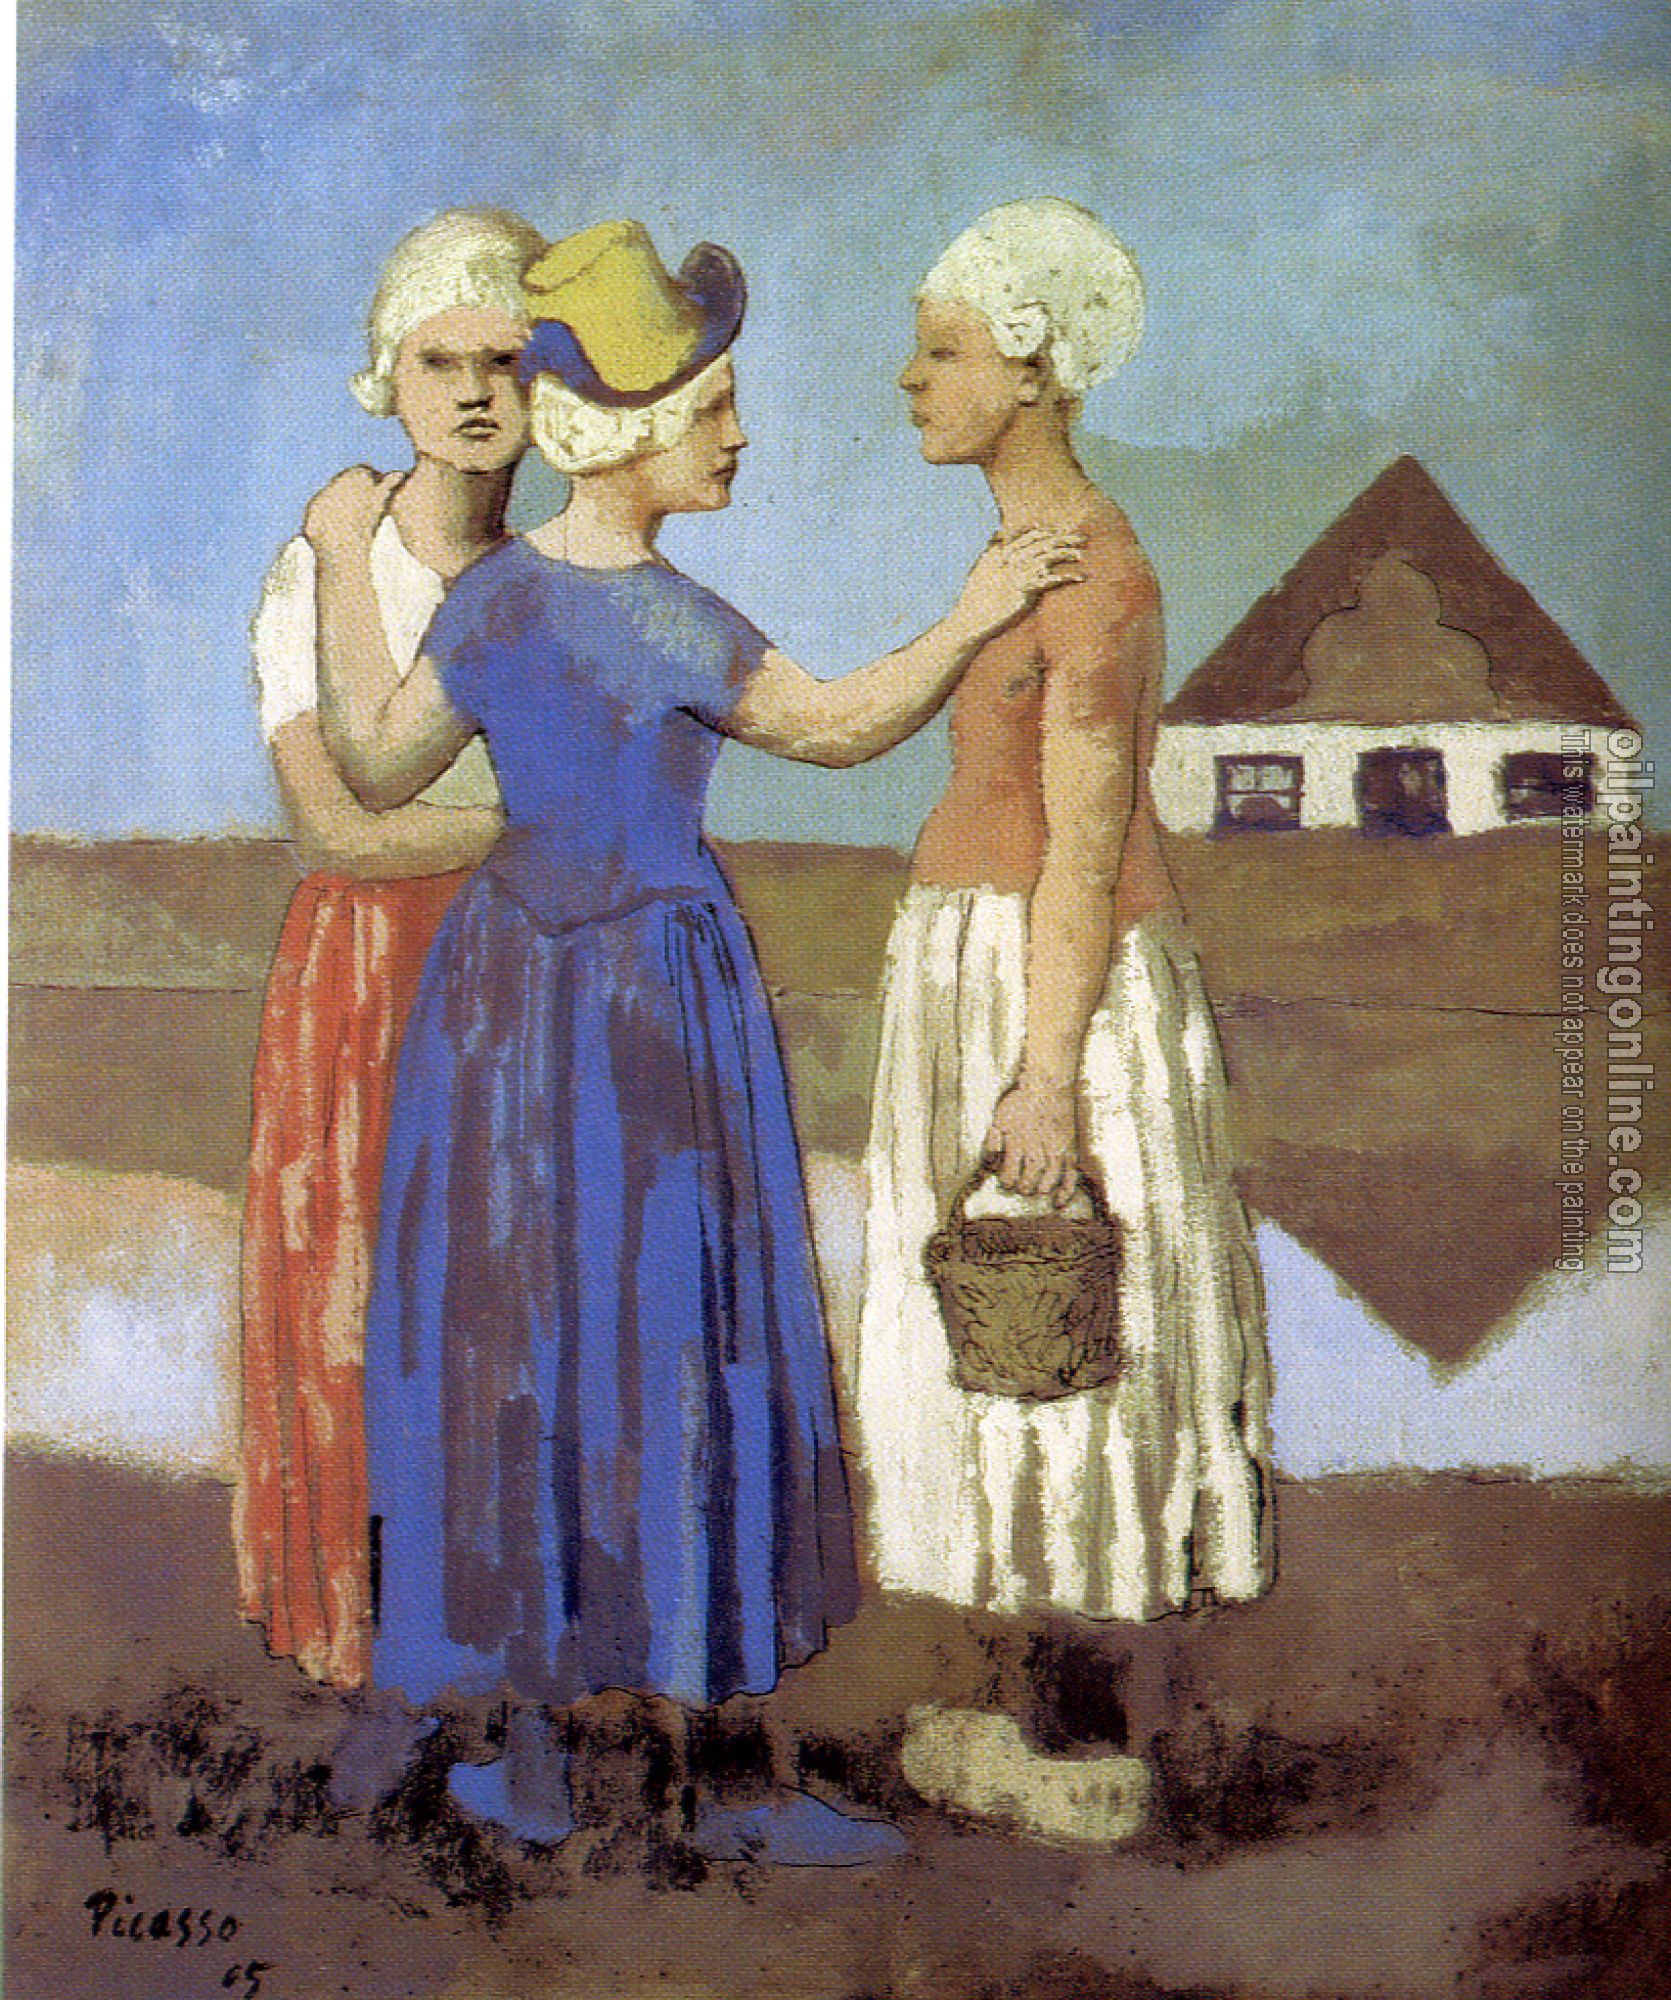 Picasso, Pablo - three dutch girls